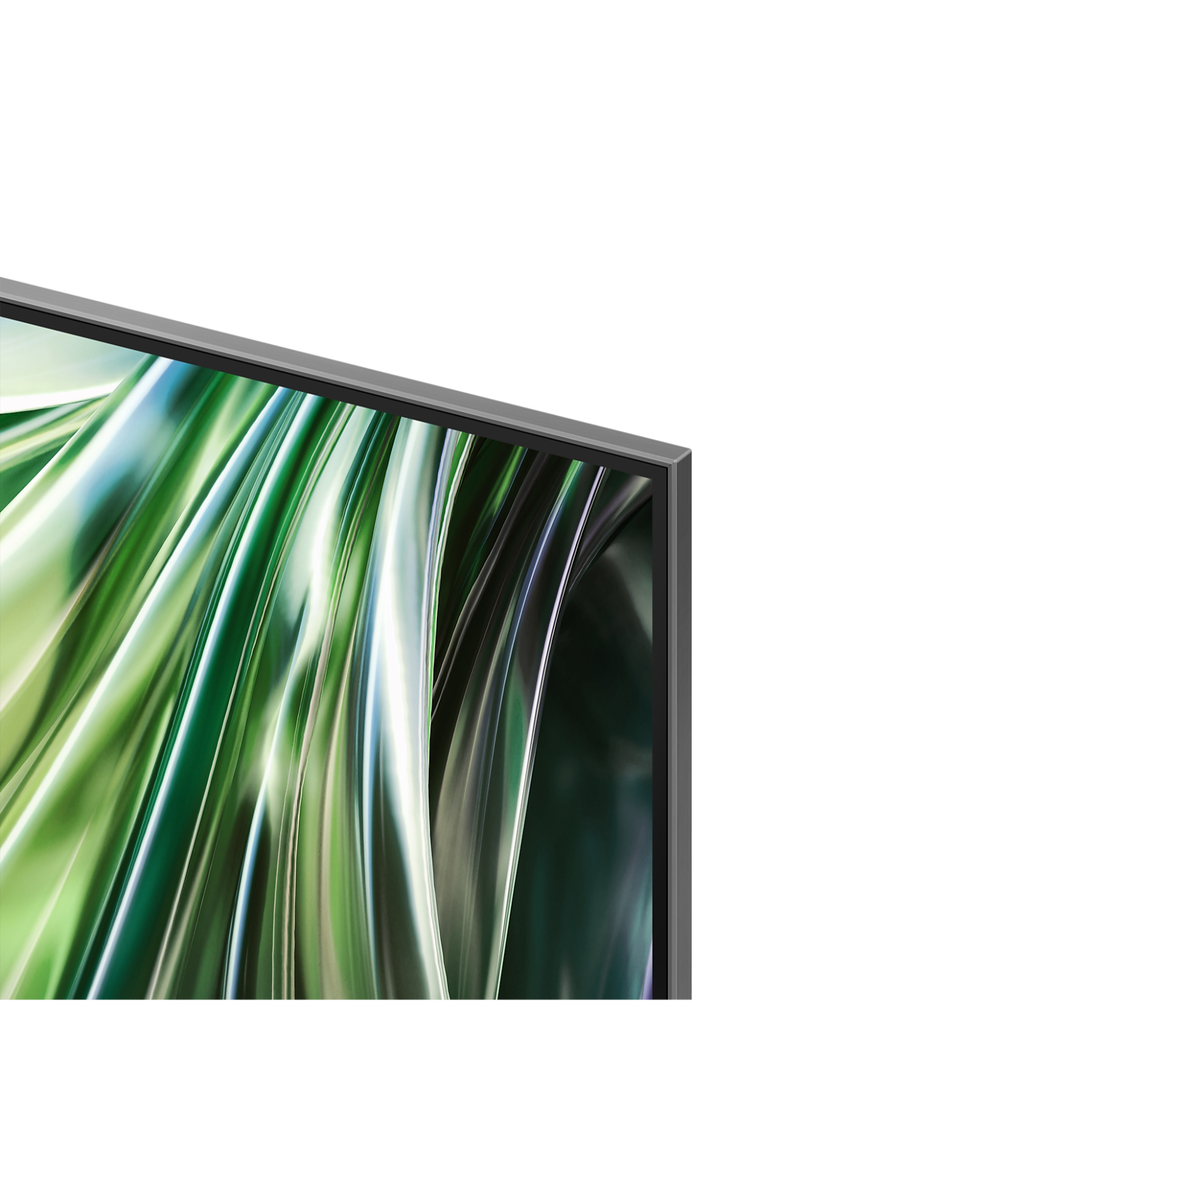 Samsung QN90D 65 inches 4K Smart QLED TV, QA65QN90DAUXZN